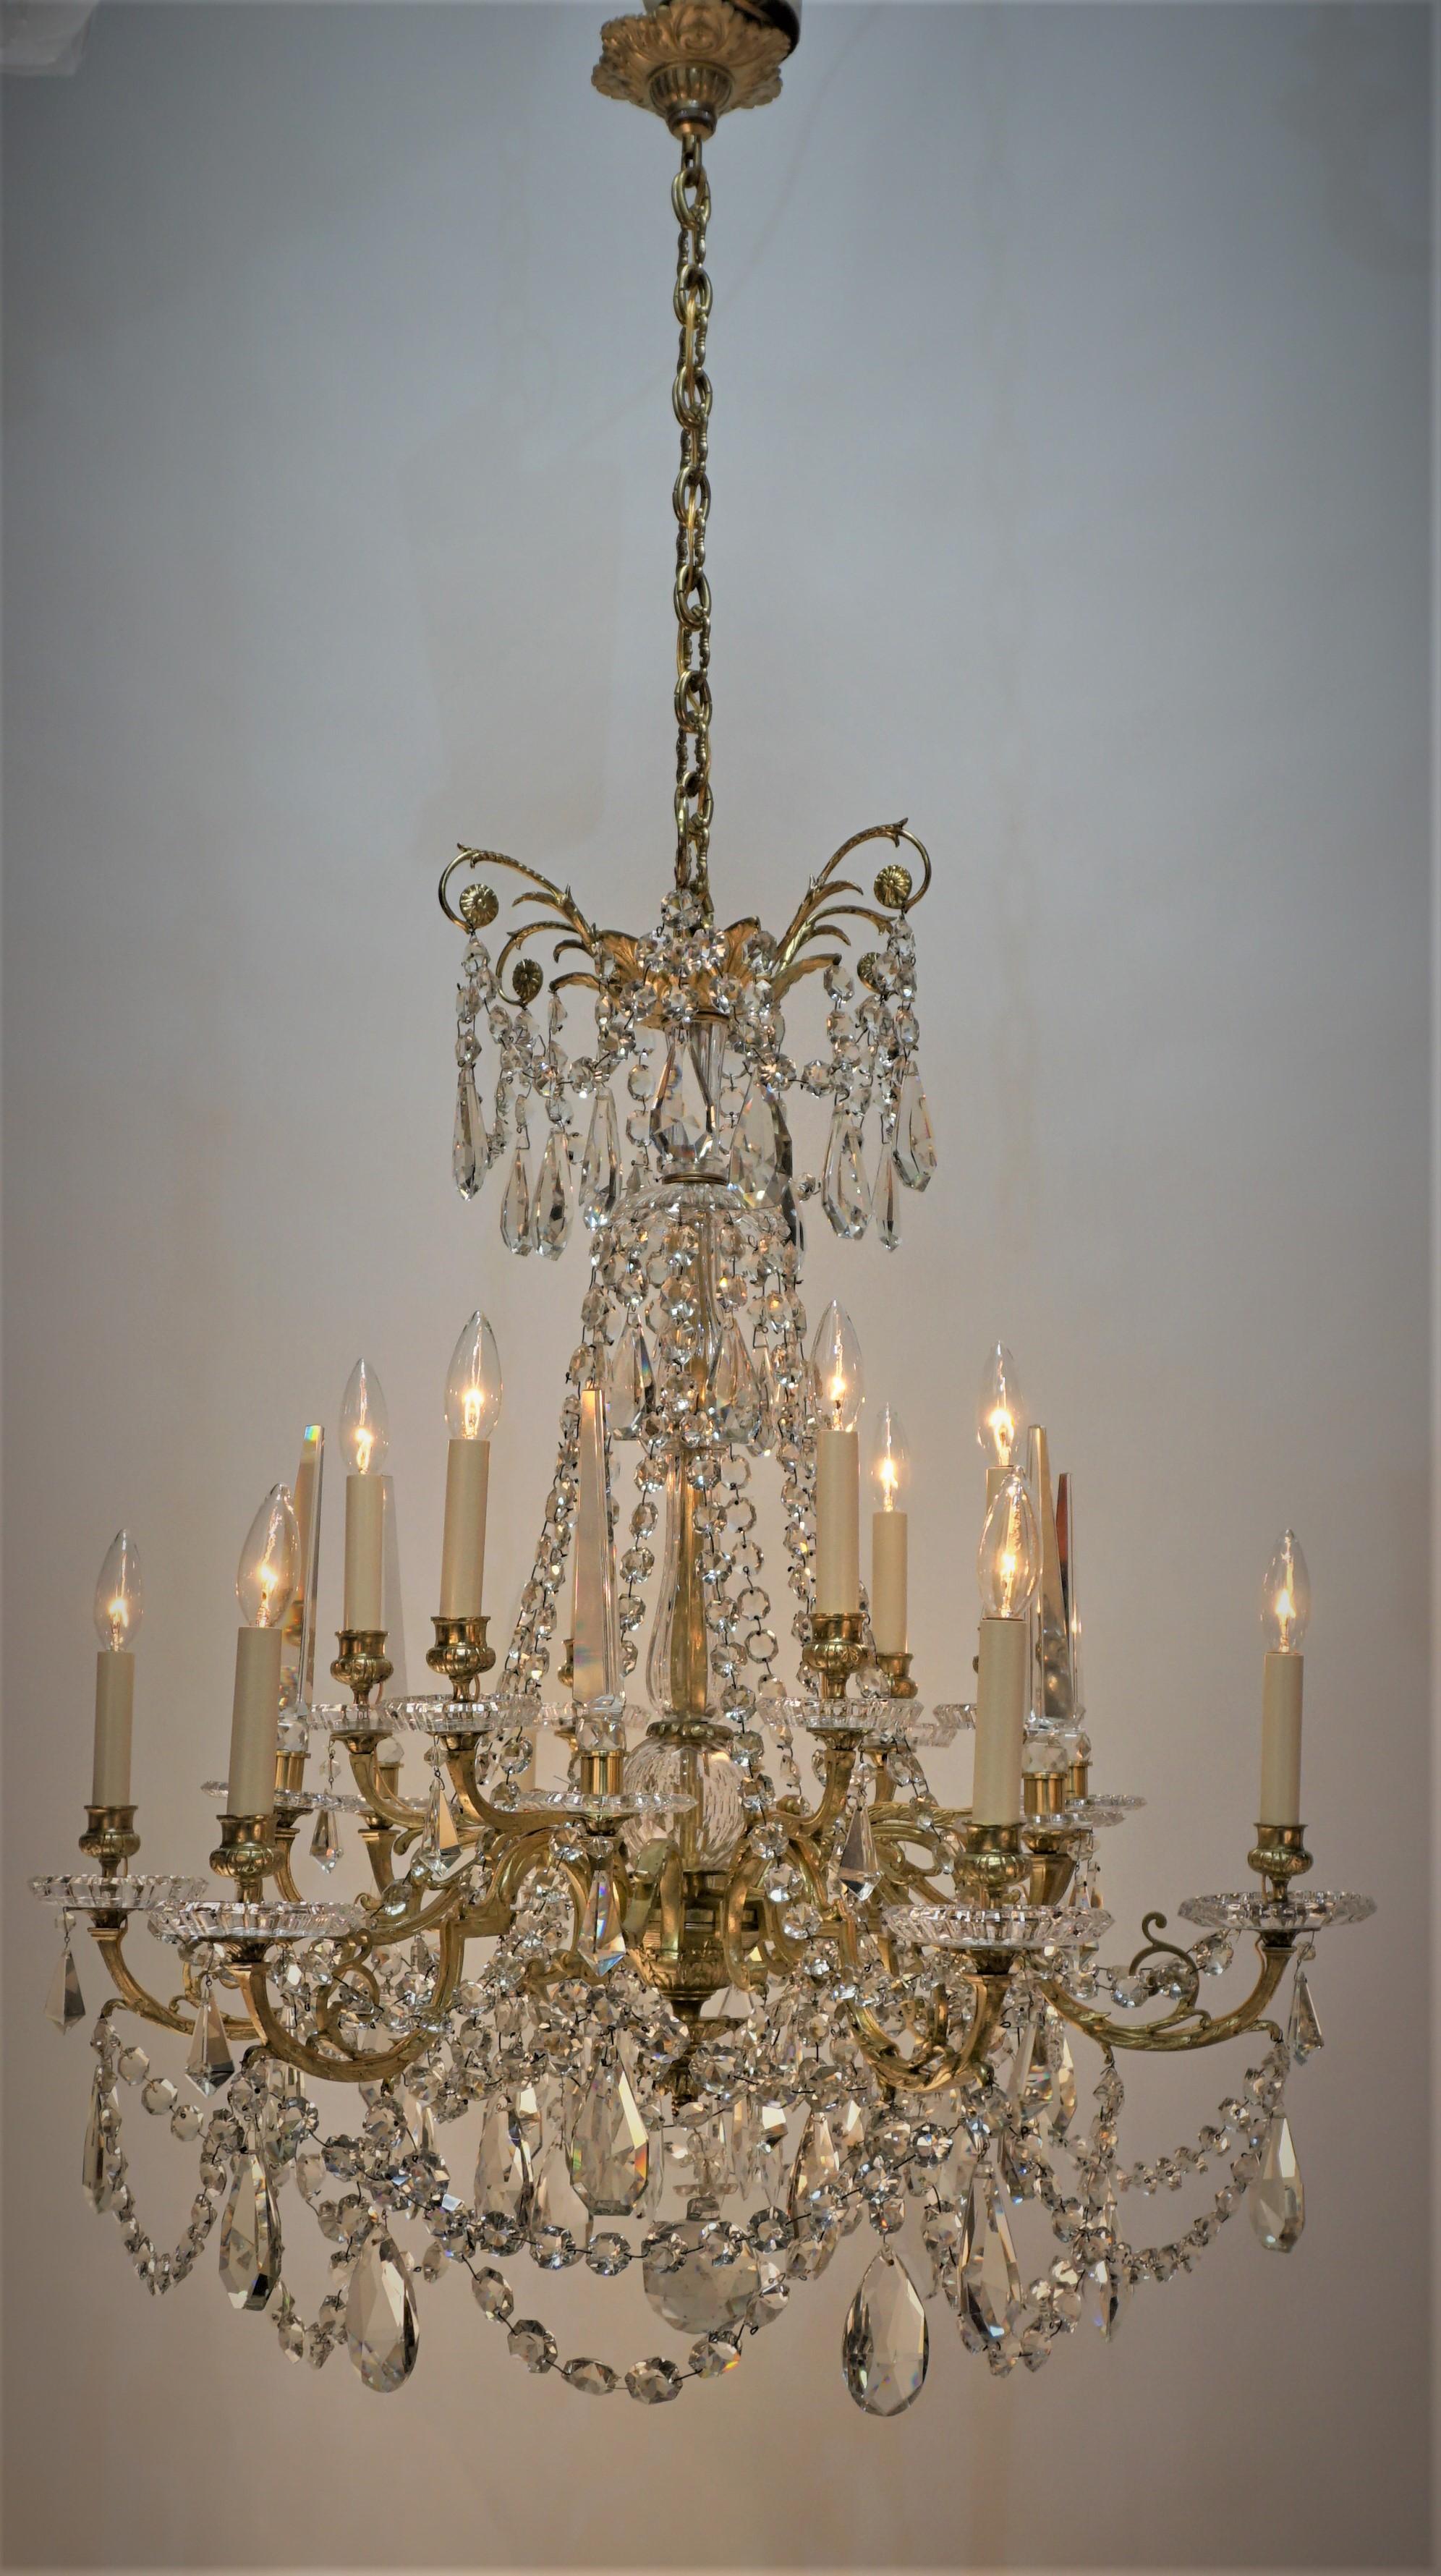 Elegant twelve light multi-faceted cut crystal and bronze frame chandelier.
Marked Baccarat.
Measurement: width 32